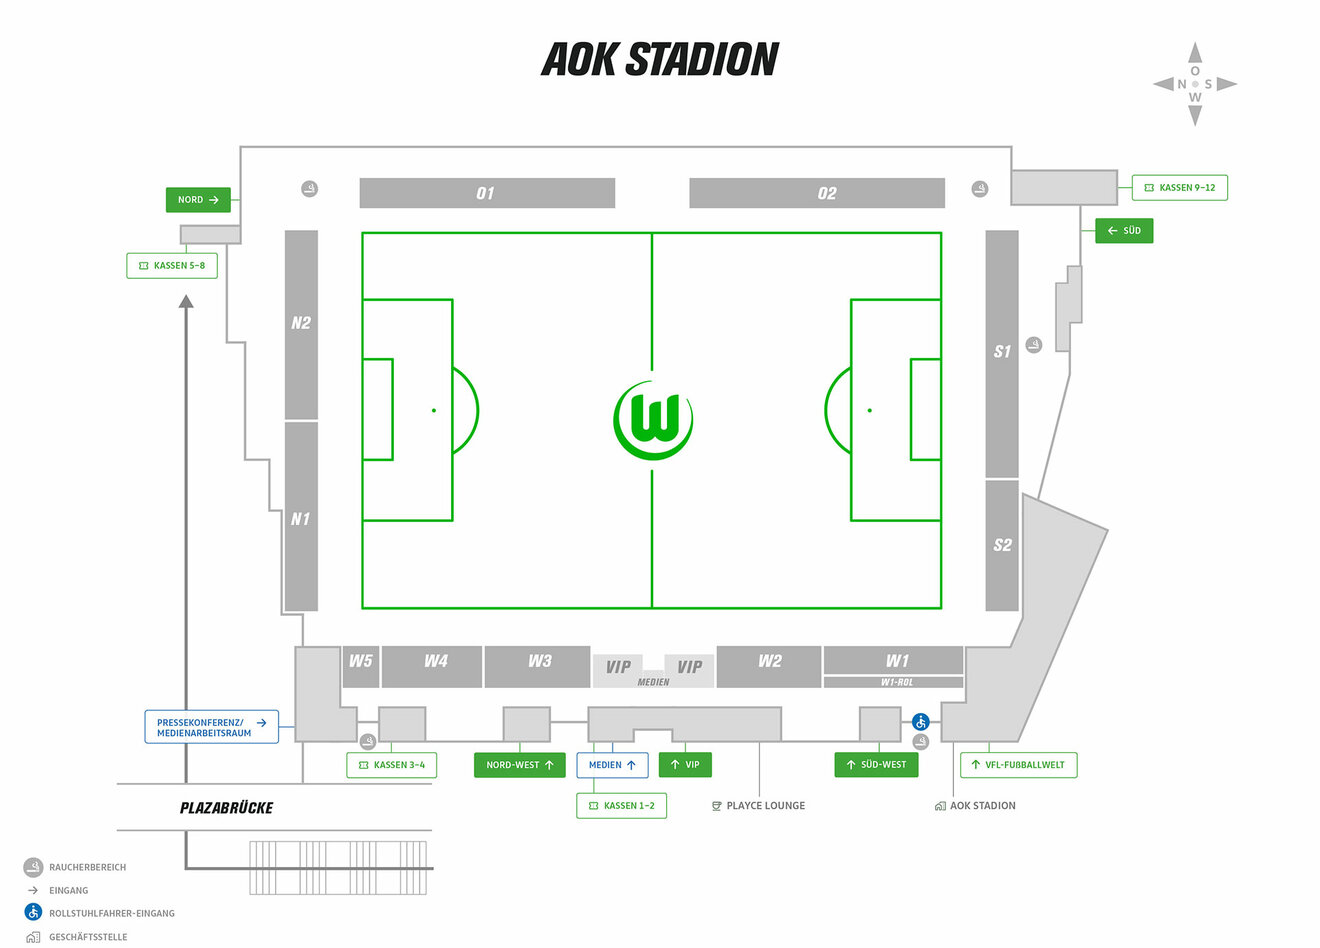 Das Bild zeigt den Stadionplan des AOK Stadions beim VfL Wolfsburg inklusive der Tribünenbezeichnungen und der Kassen bzw. Eingänge.